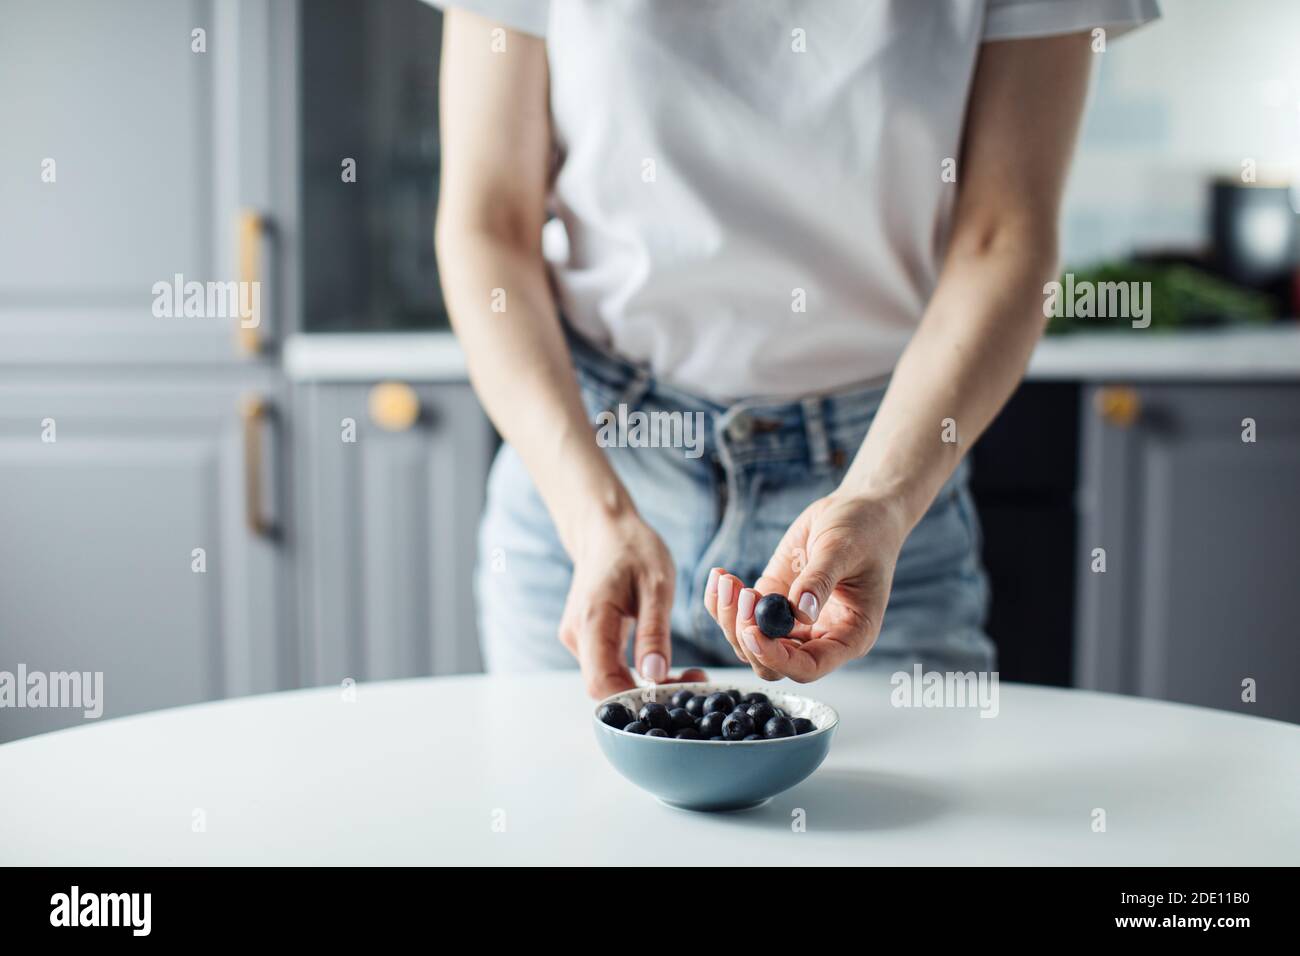 Le mani della donna prendono i mirtilli dal piatto. Sullo sfondo di una bella cucina. Foto Stock